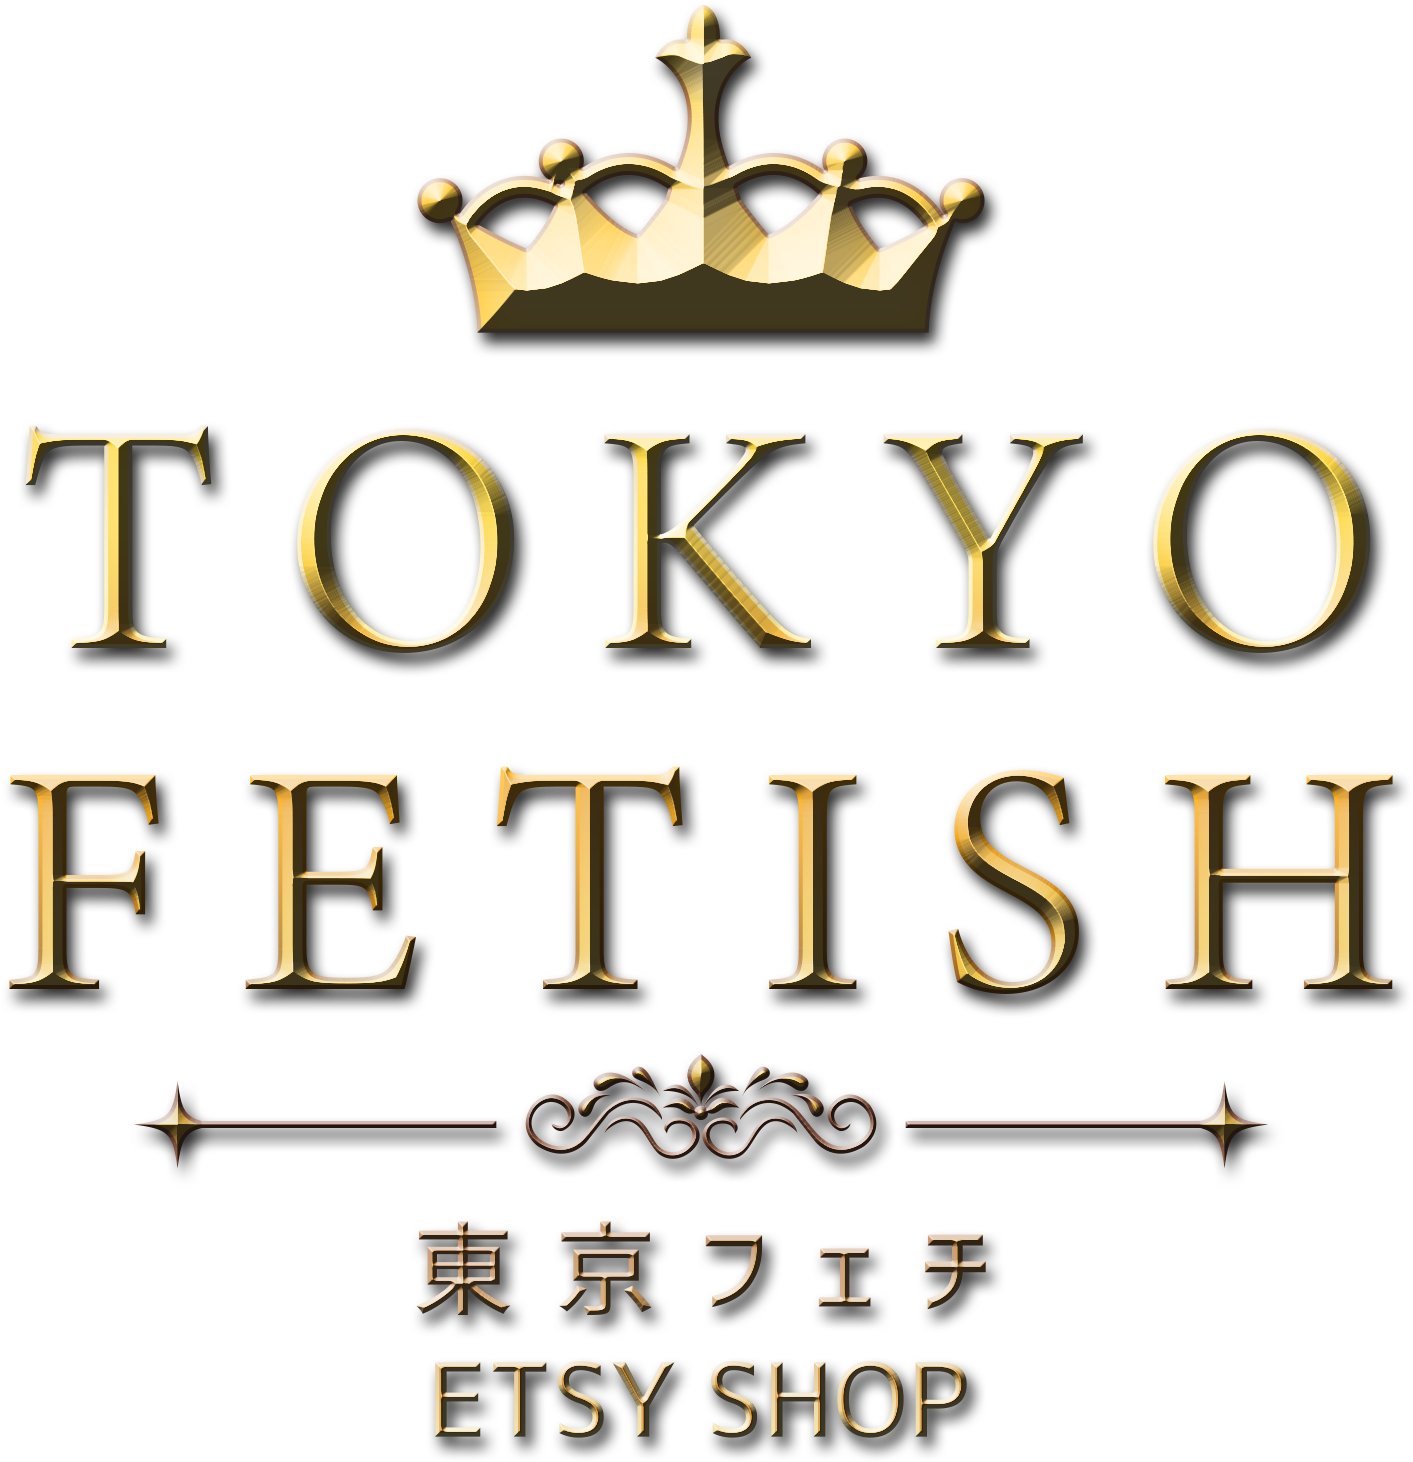 Tokyo Fetish Etsy Shop Logo PNG